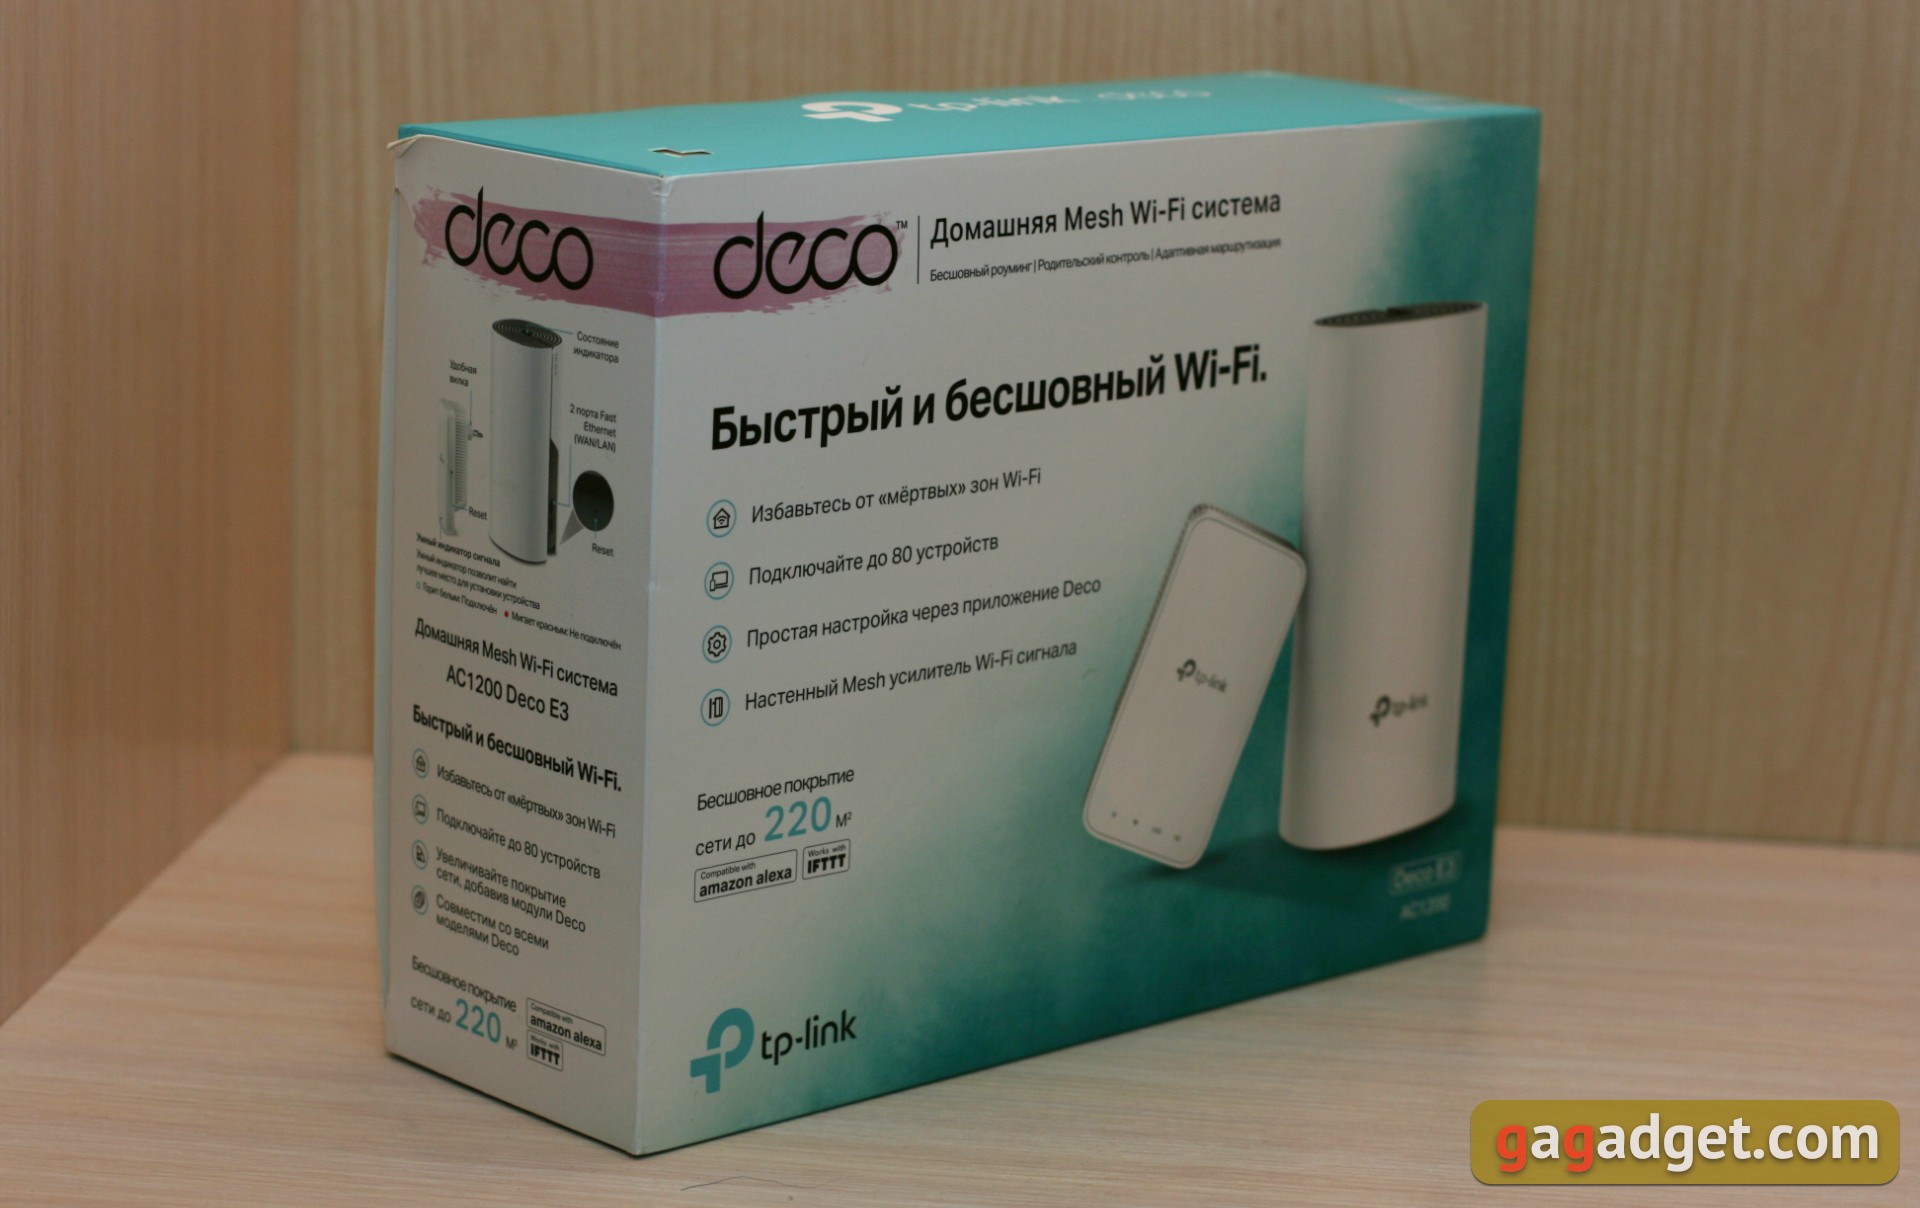 Обзор TP-Link Deco E3: самый простой способ улучшить Wi-Fi дома-2